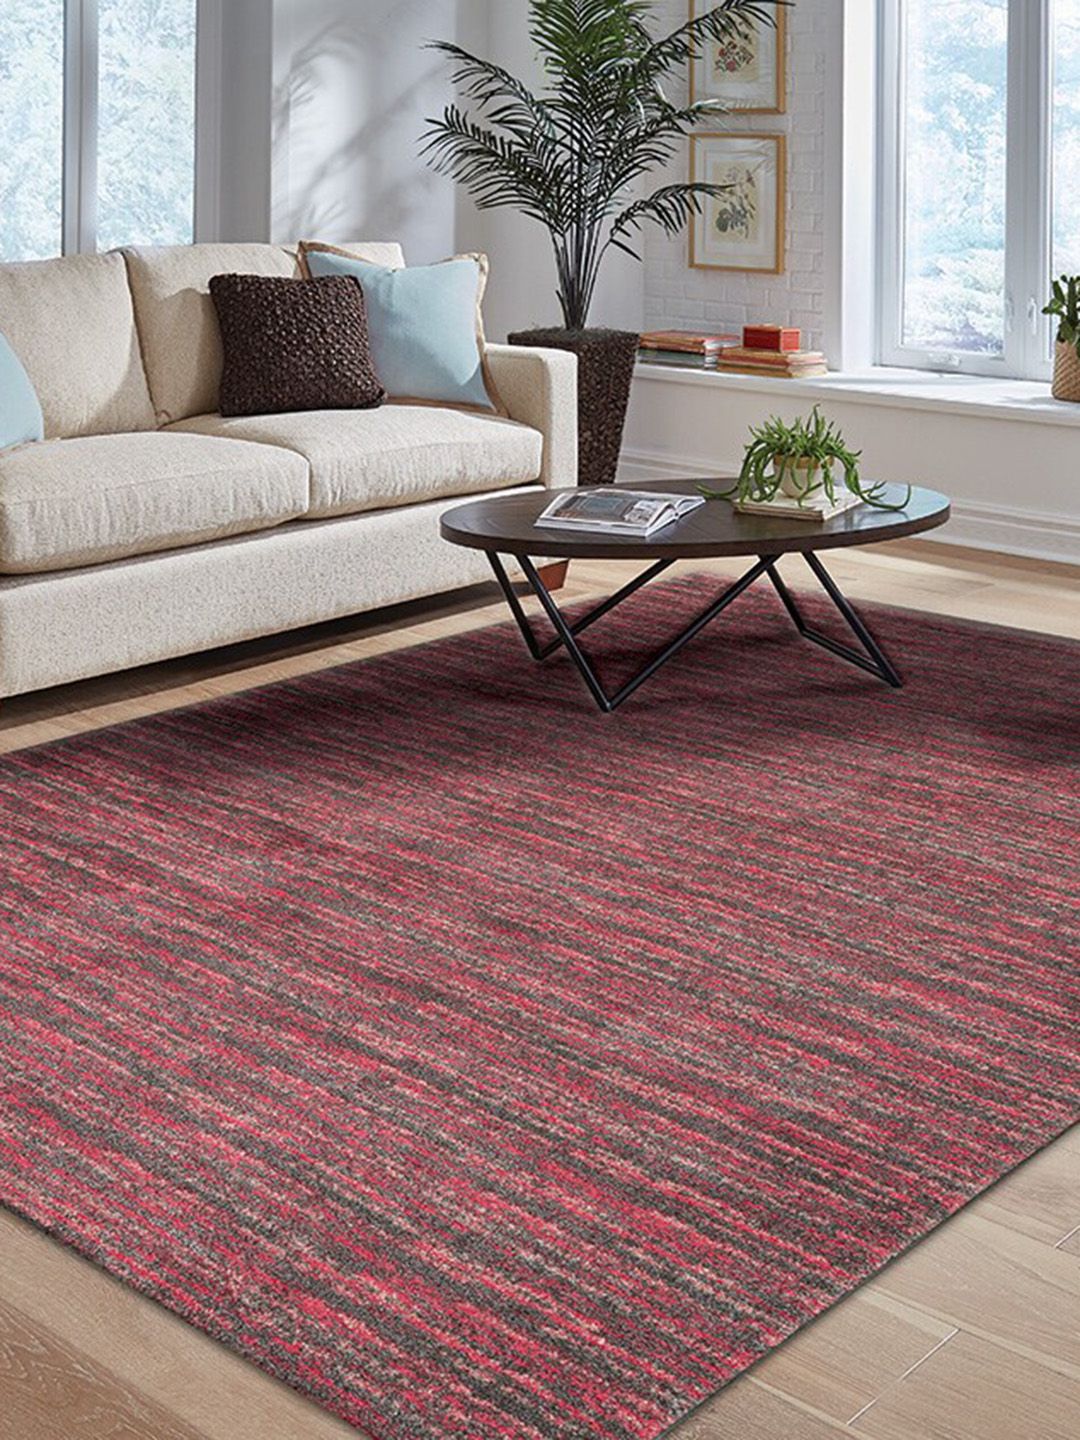 DDecor Red Rectangular Polypropylene Carpet Price in India